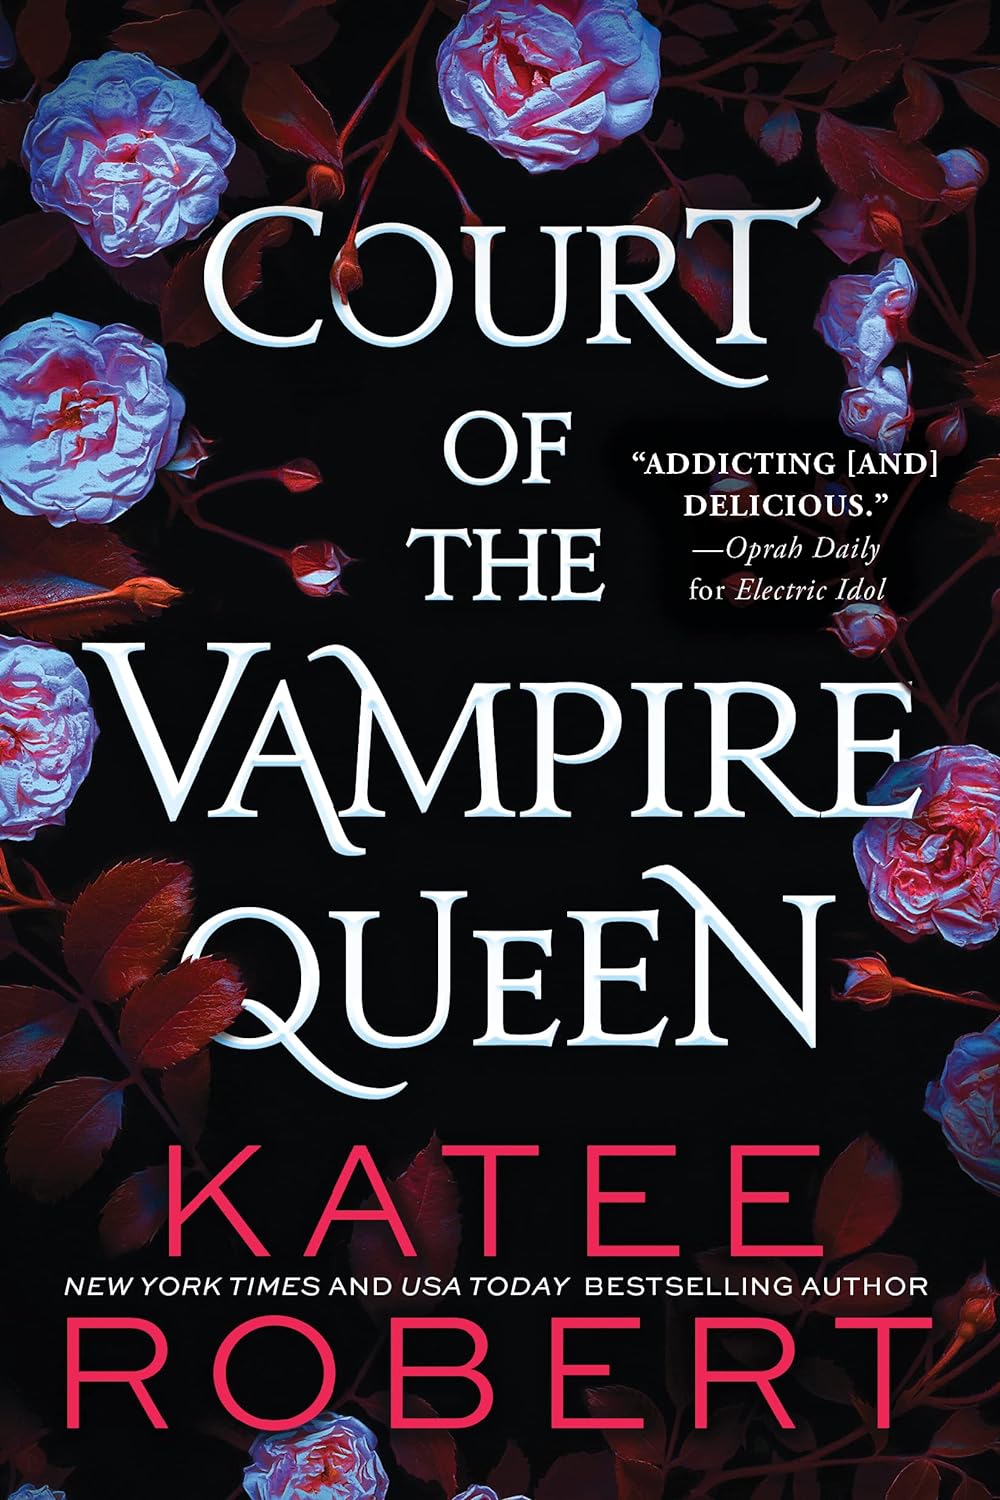 Court of the Vampire Queen - by Katee Robert